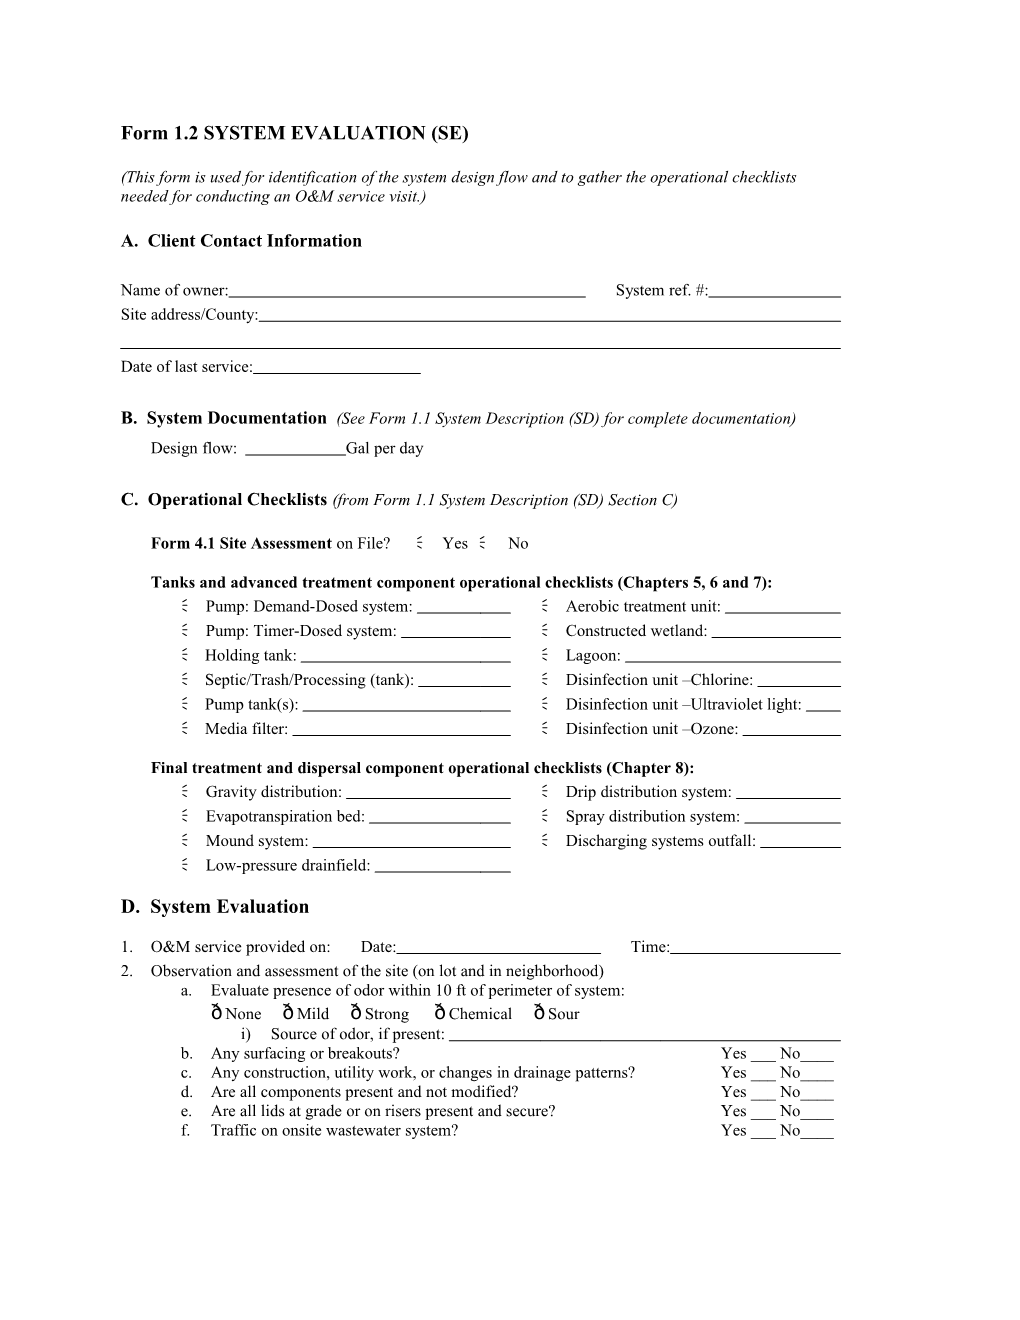 Form 1.2 SYSTEM EVALUATION (SE)